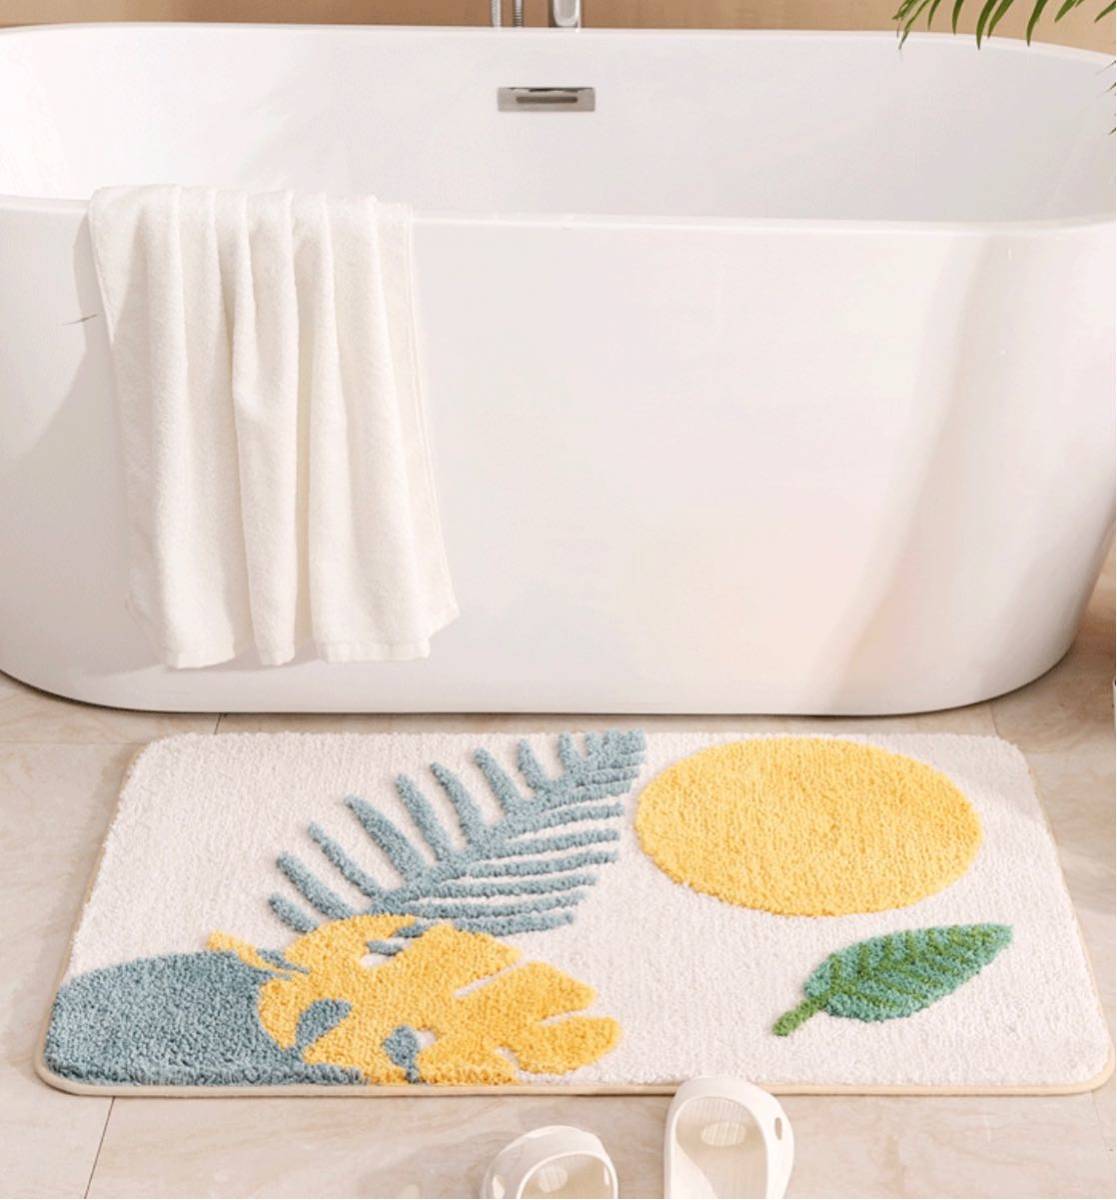  новый товар не использовался коврик для ванной коврик перед дверью туалет коврик . вода скорость .... предотвращение скольжения рисунок 3